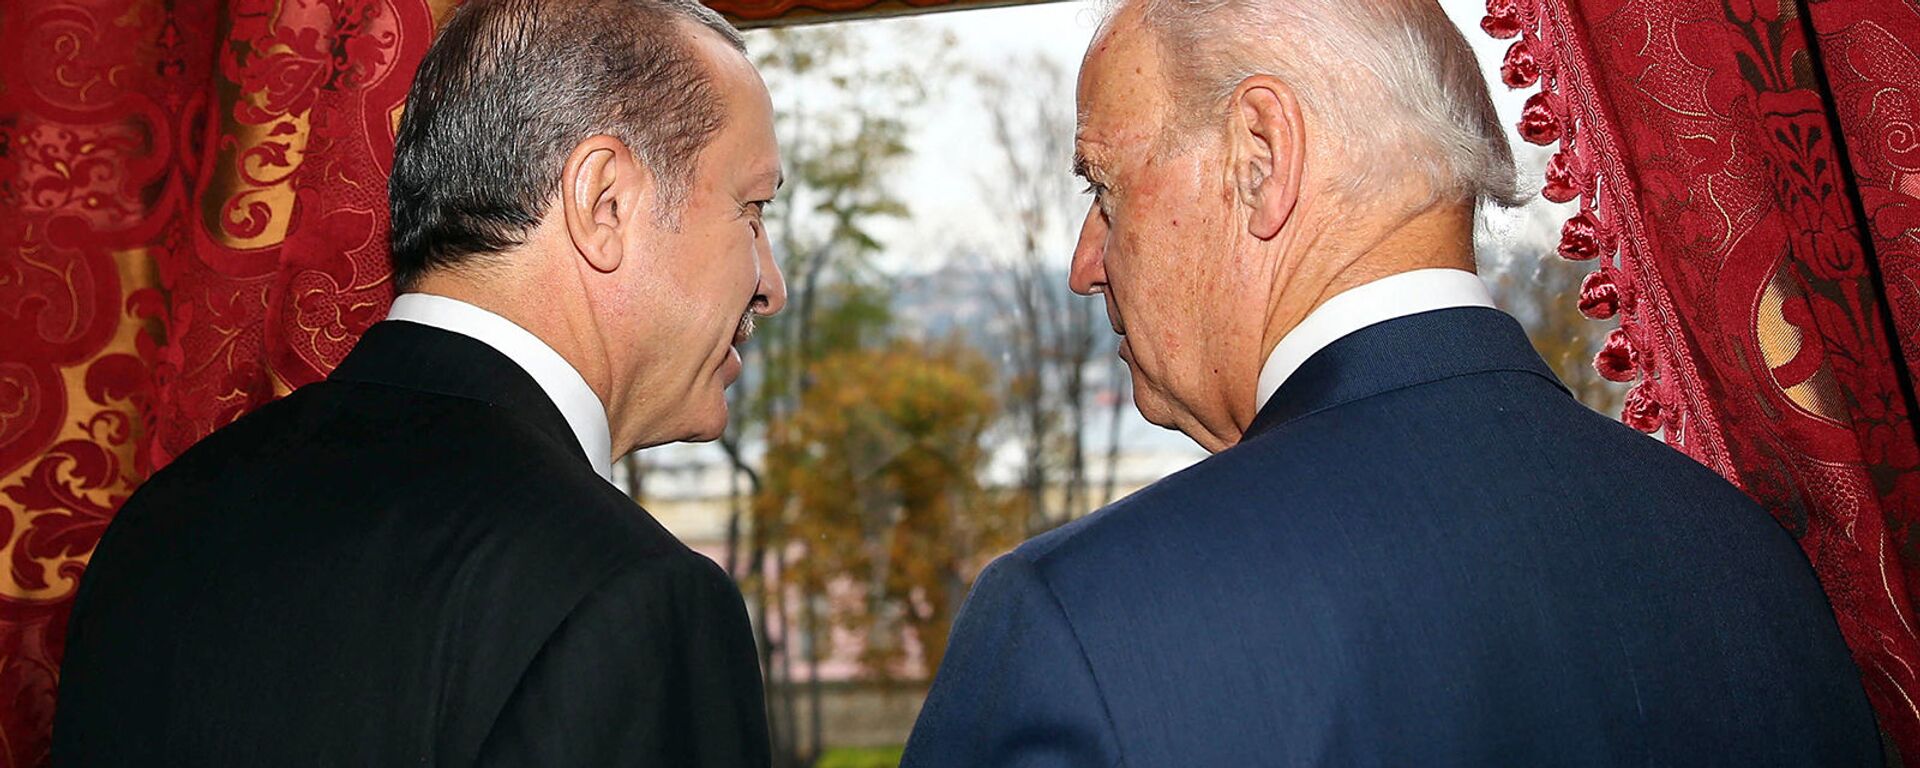 Беседа вице-президента США Джо Байдена с президентом Турции Реджепом Эрдоганом во дворце Бейлербейи (22 ноября 2014).  Стамбул - Sputnik Армения, 1920, 24.09.2021